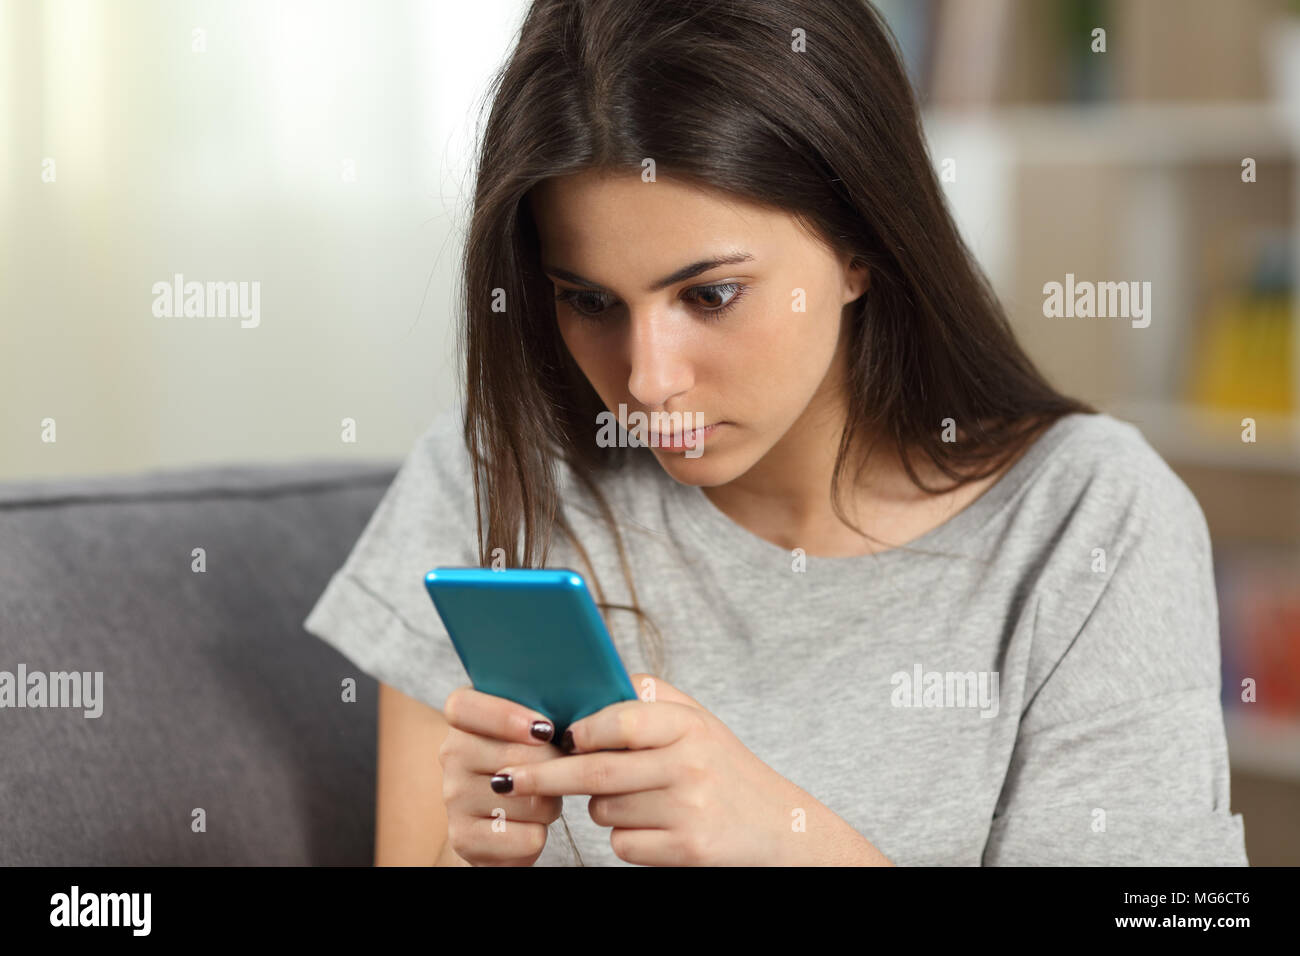 Человек смотрит переписку. Девушка с телефоном. Девушка читает телефон. Девушка переписывается в телефоне. Девушка со смартфоном в руках.